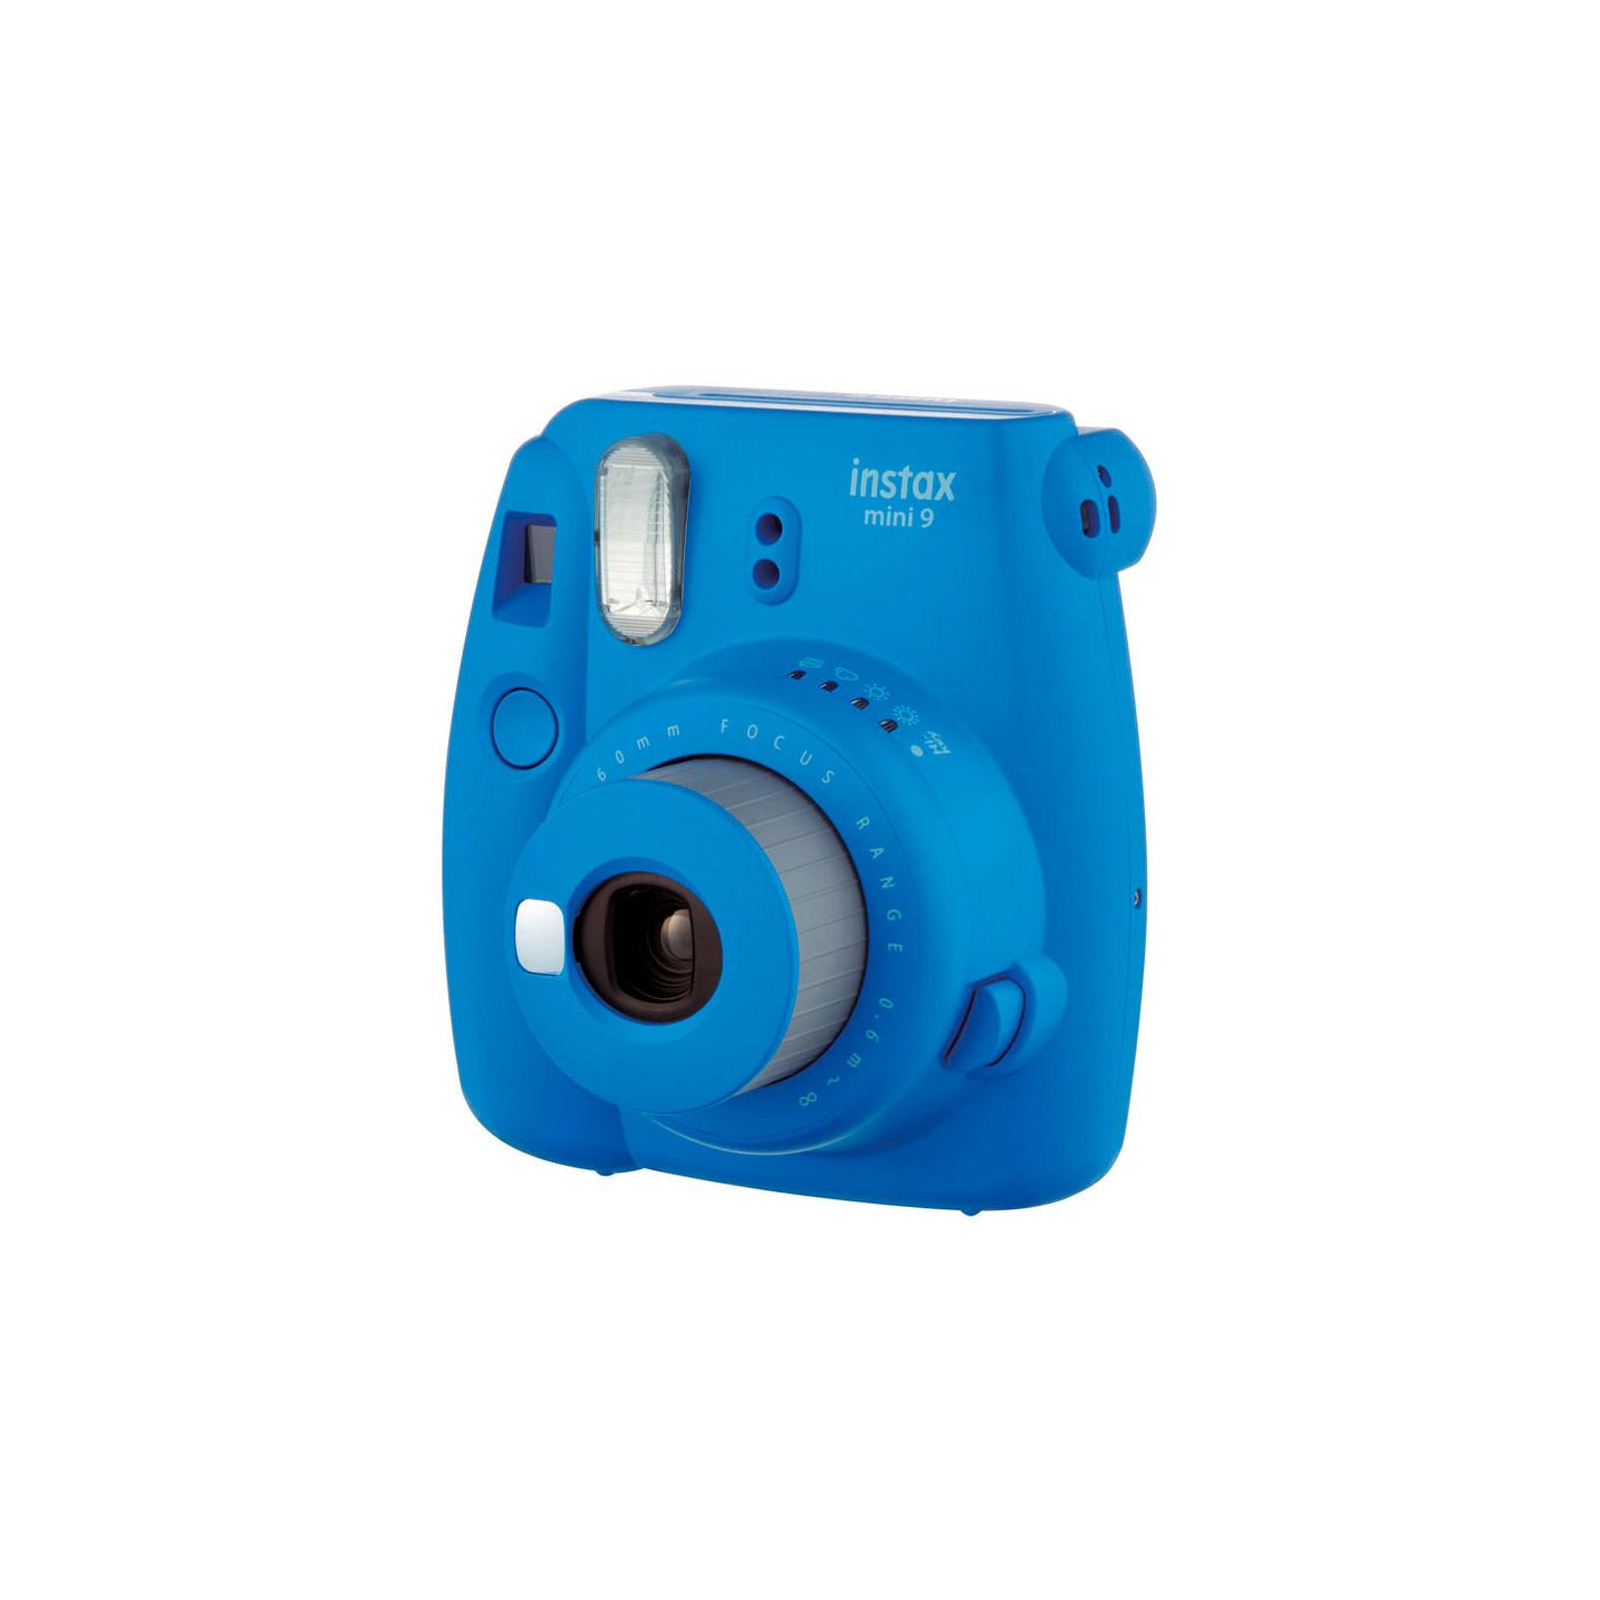 Камера миттєвого друку Fujifilm Instax Mini 9 CAMERA COB BLUE EX D N Синий Кобальт (16550564)